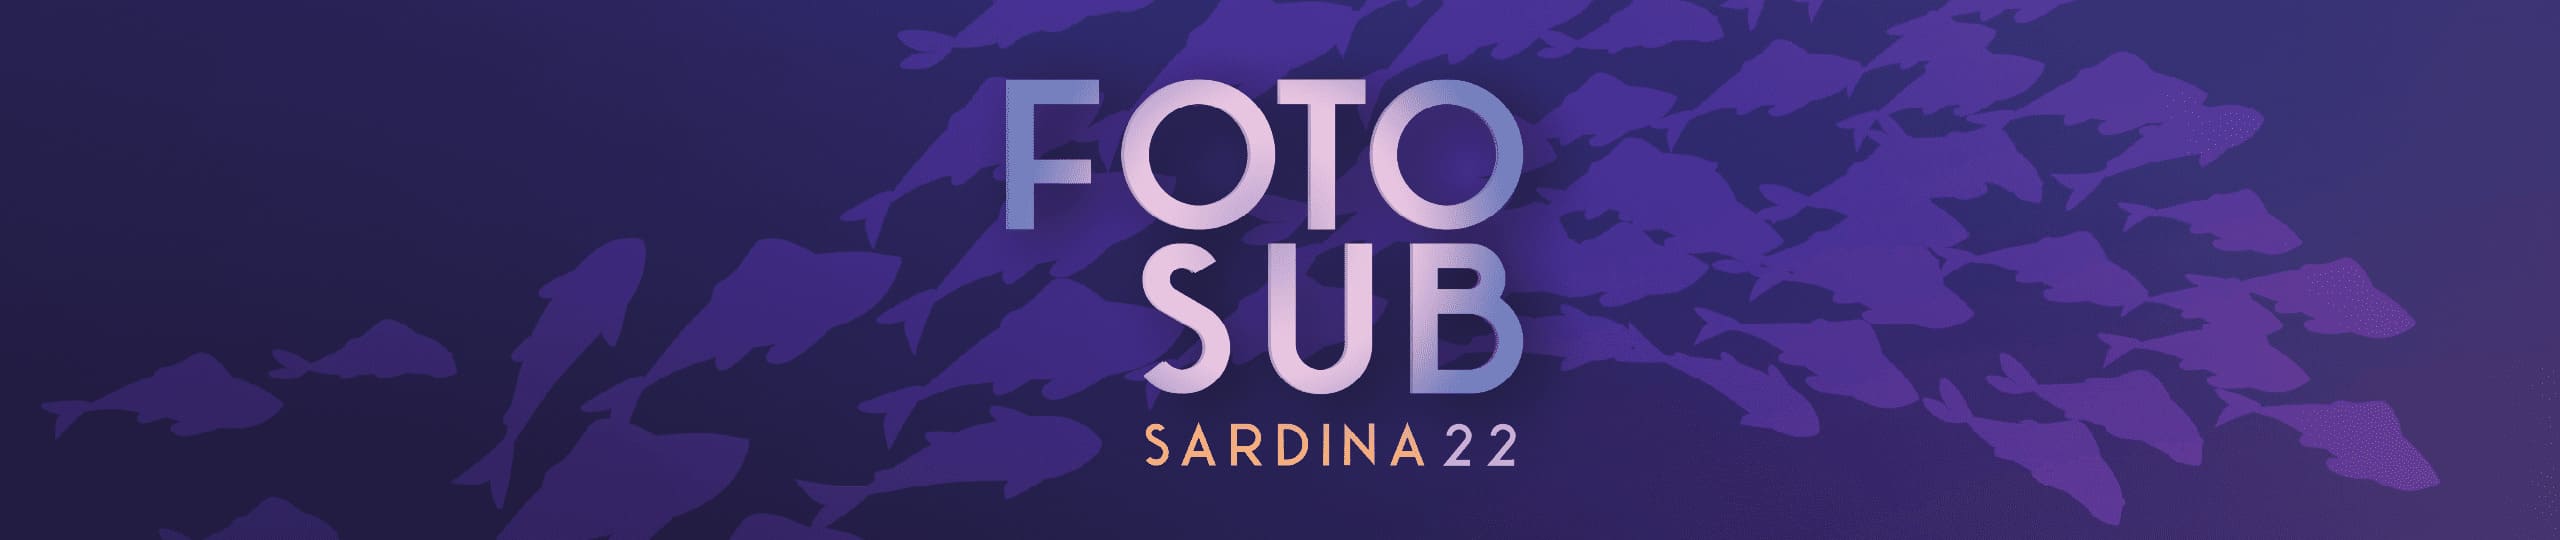 FotoSub Sardina